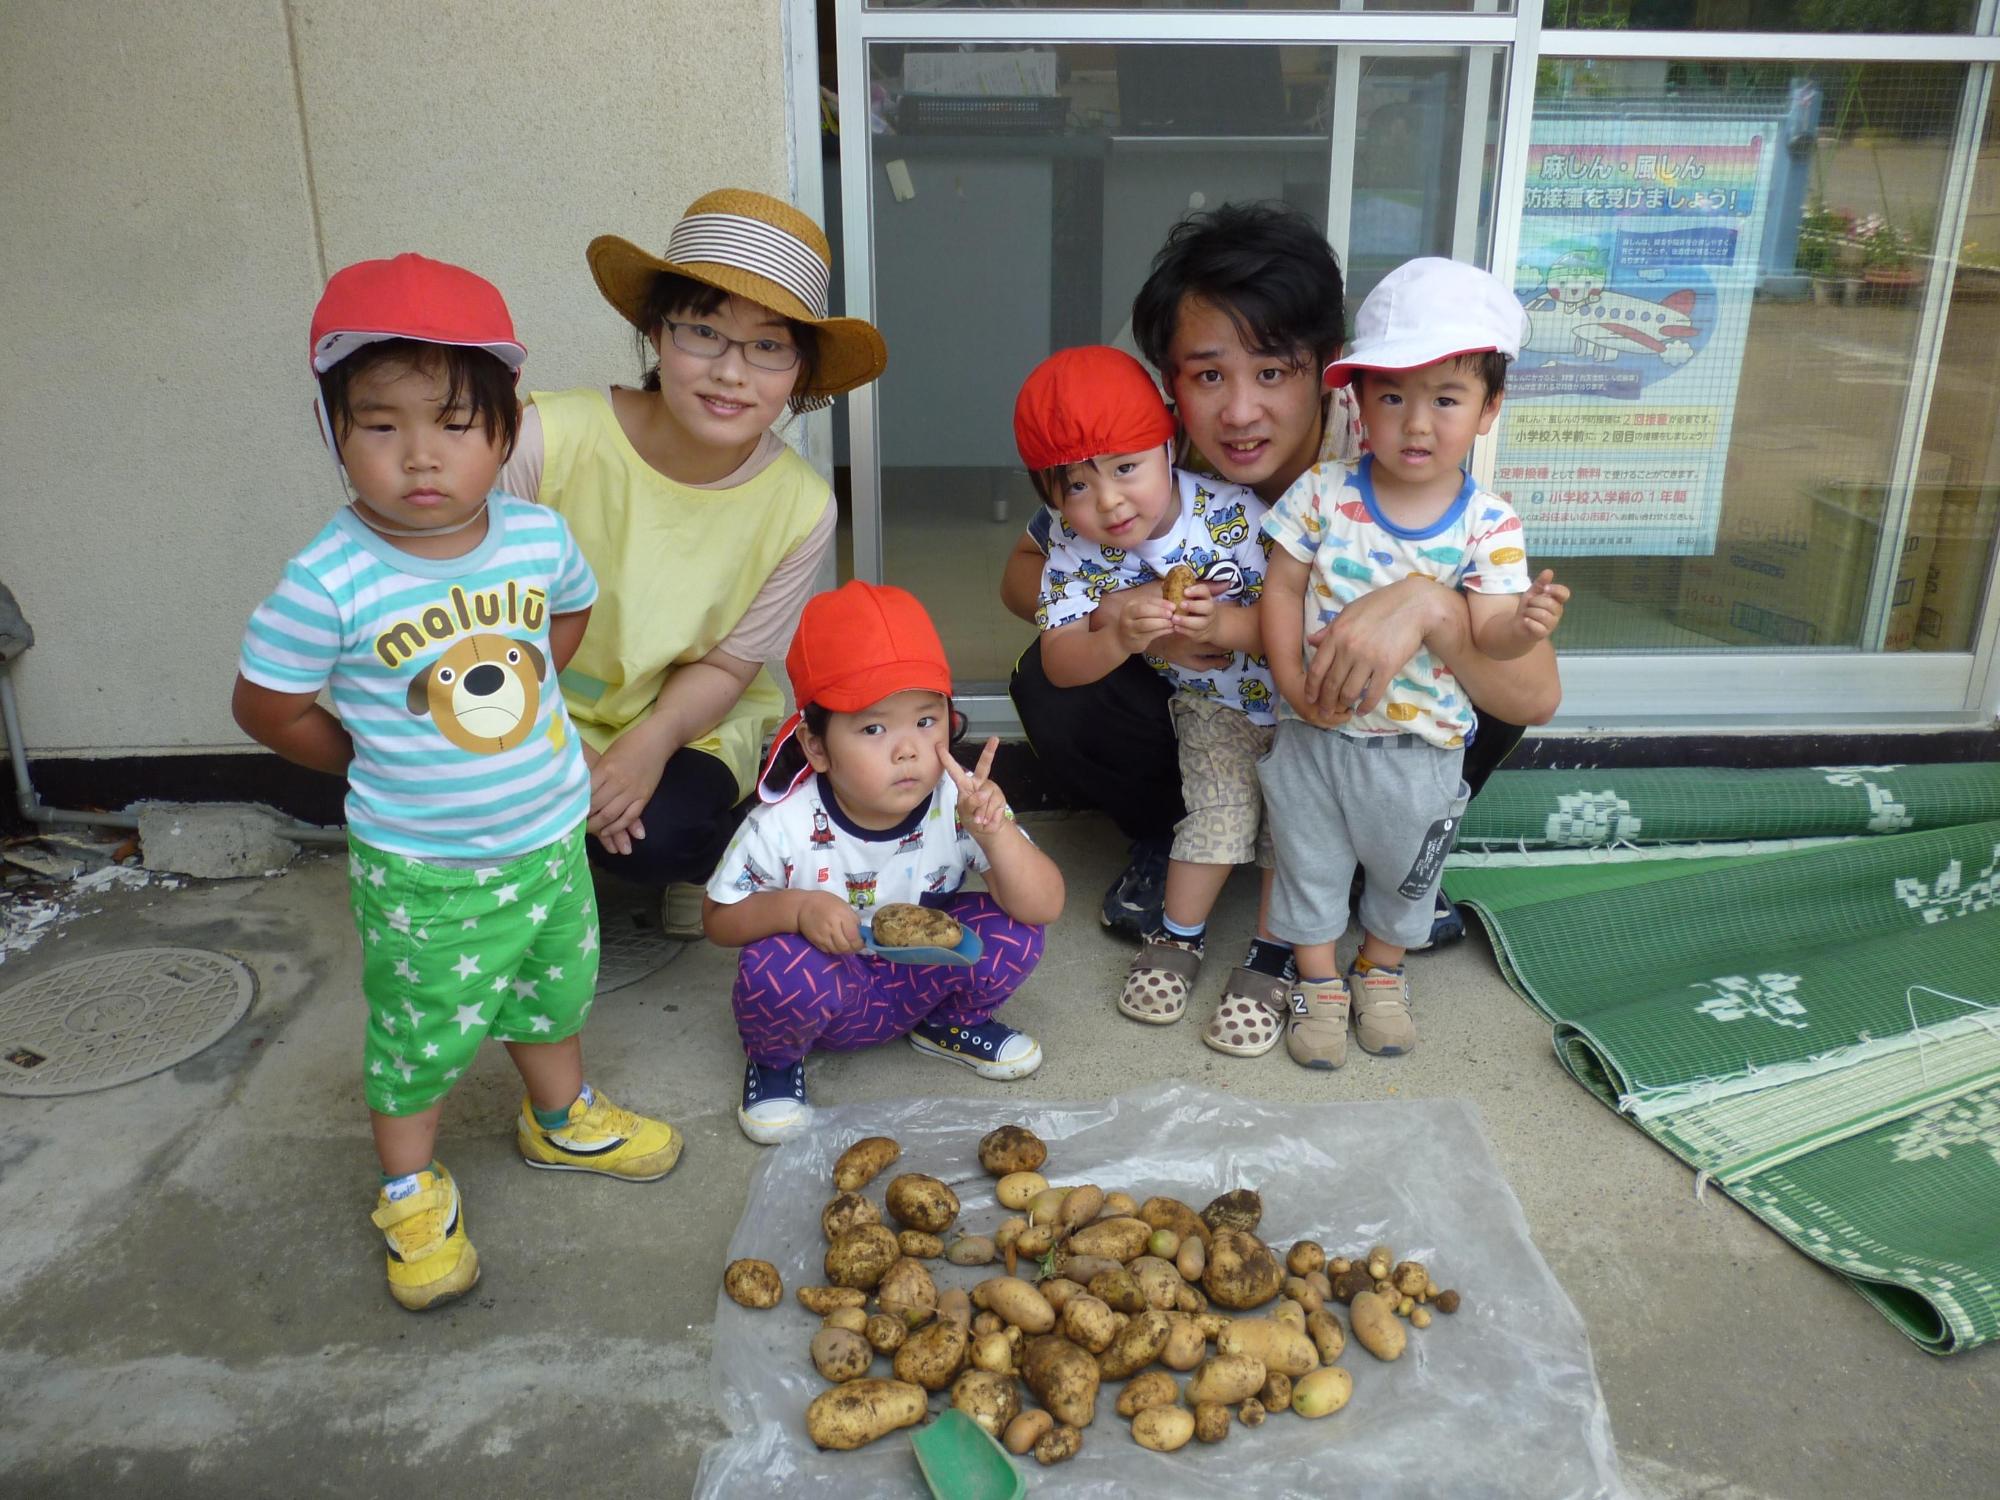 一日保育士体験のお母さんと保育士の先生と2歳児クラスの園児4人が収穫したじゃがいもと一緒に写っている写真